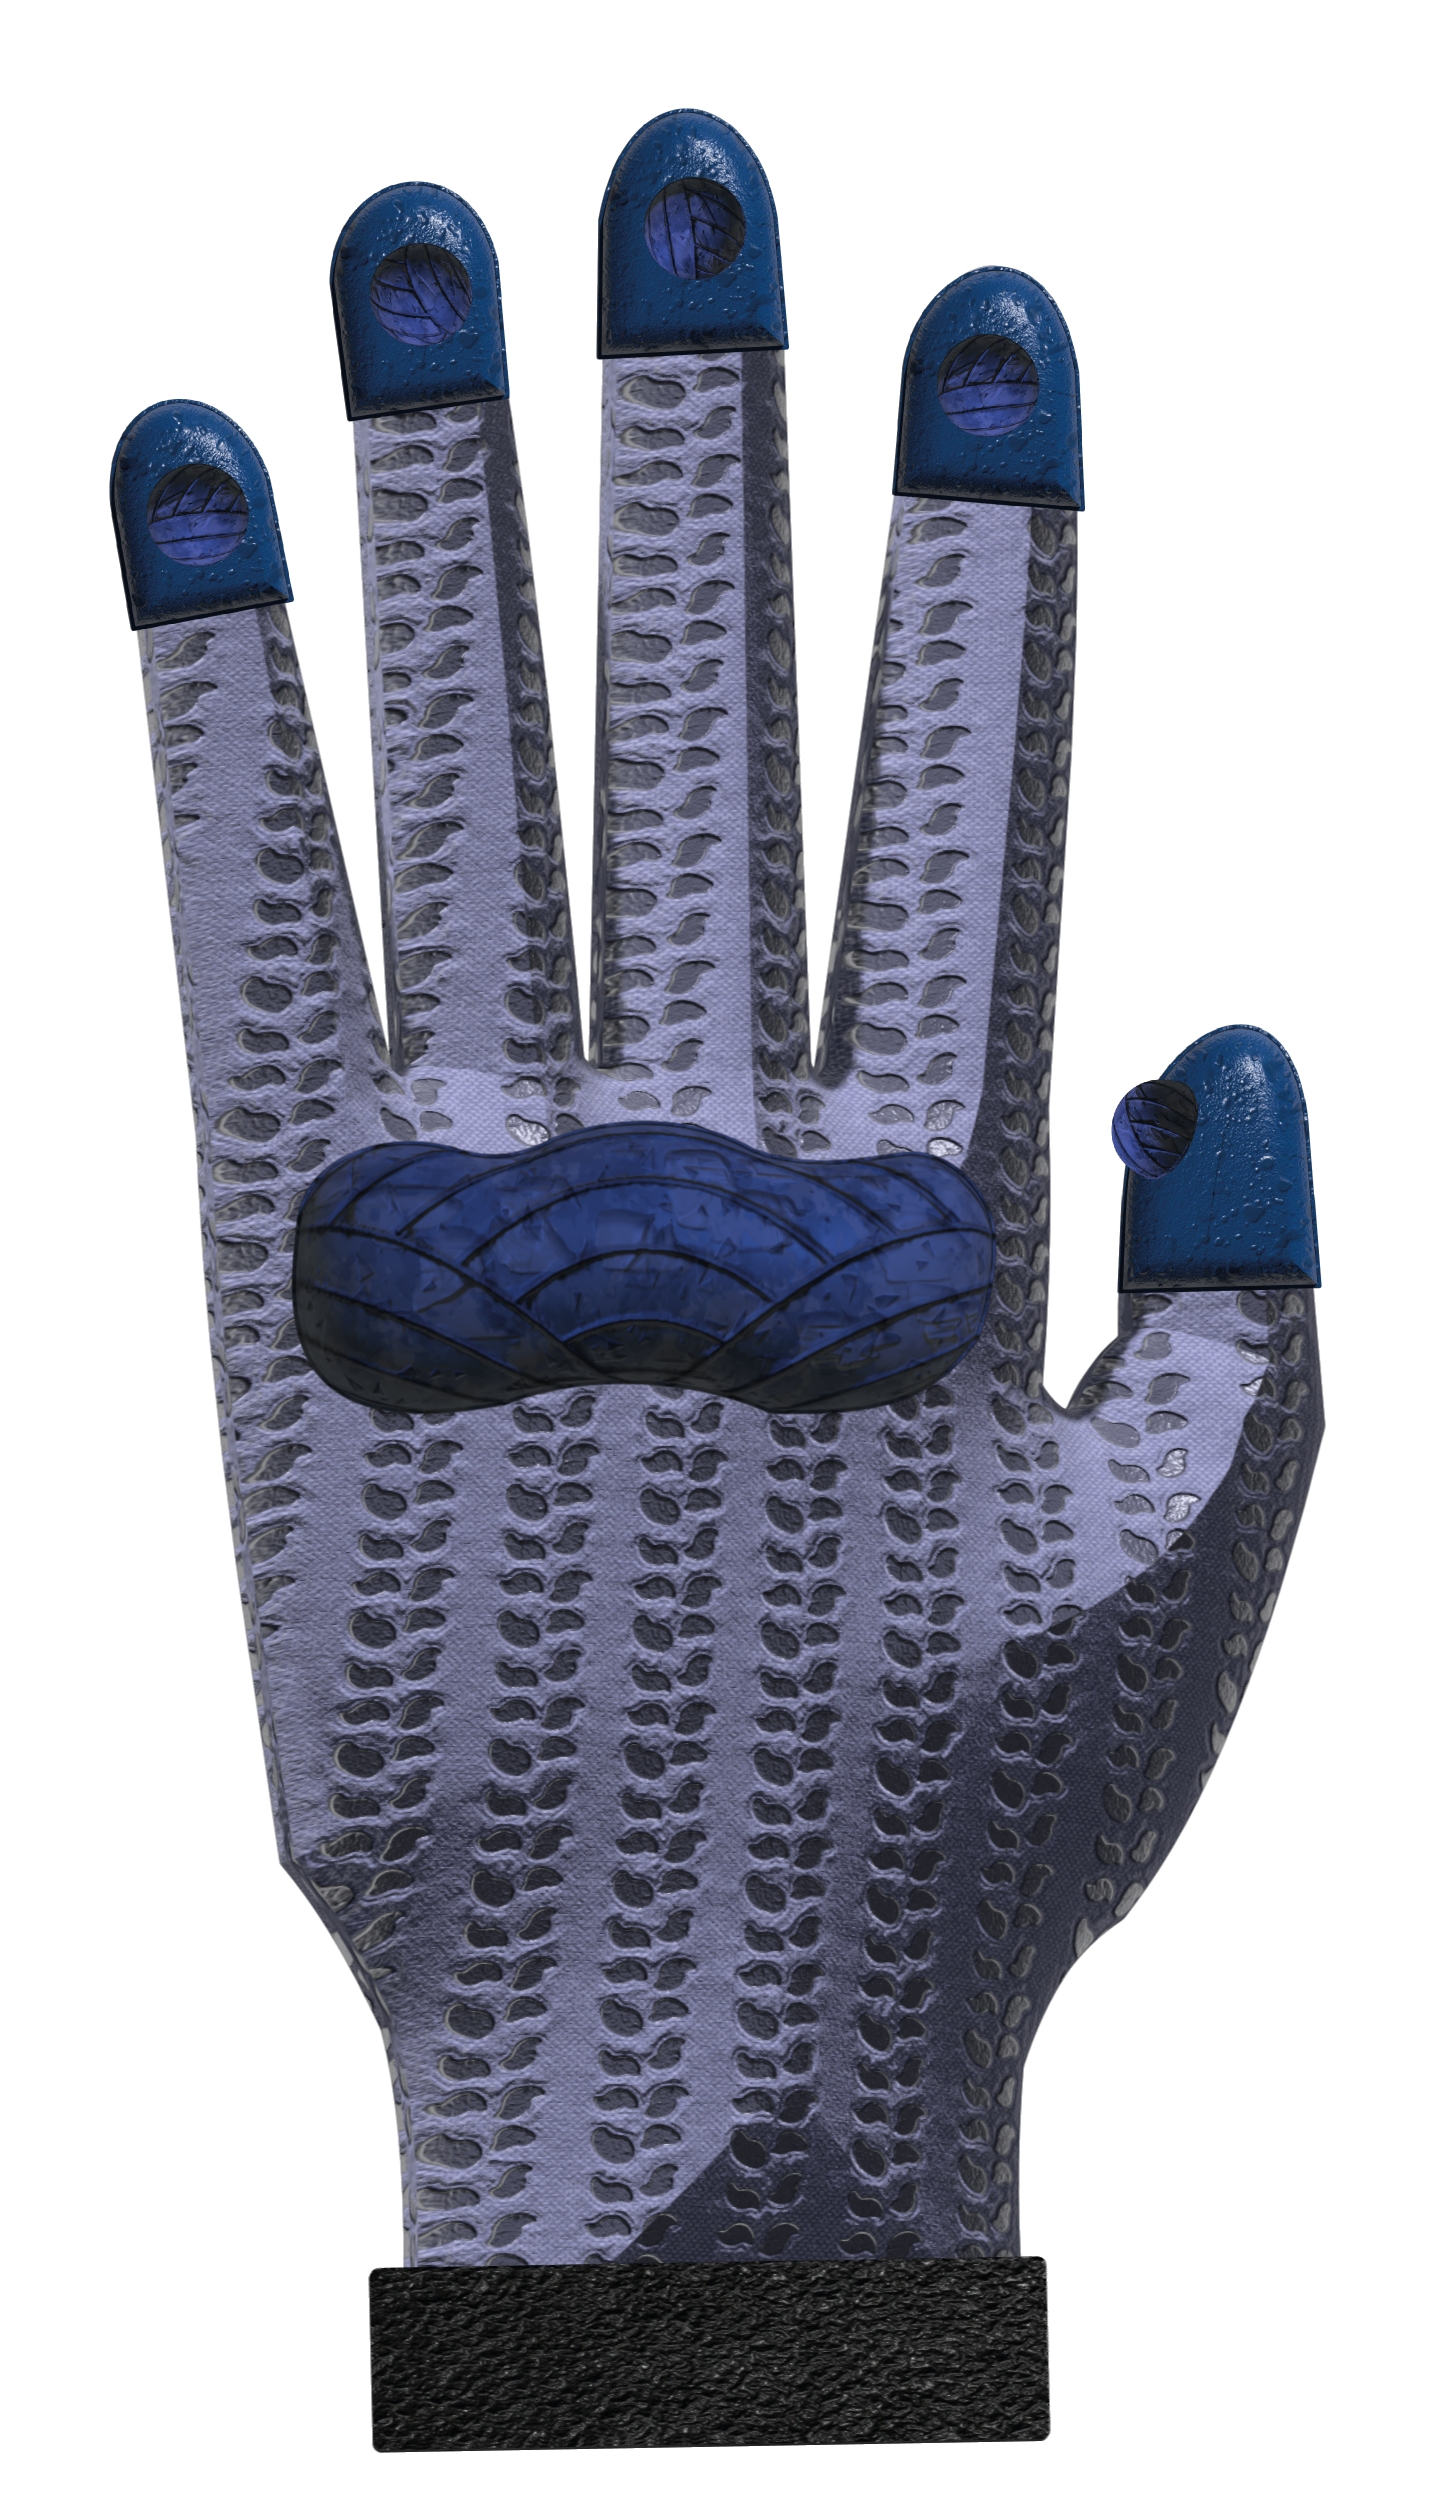 guante en posición verical mostrando parte interna donde se puede ver la protección de la palma que 
            libera vibraciones en forma de alerta